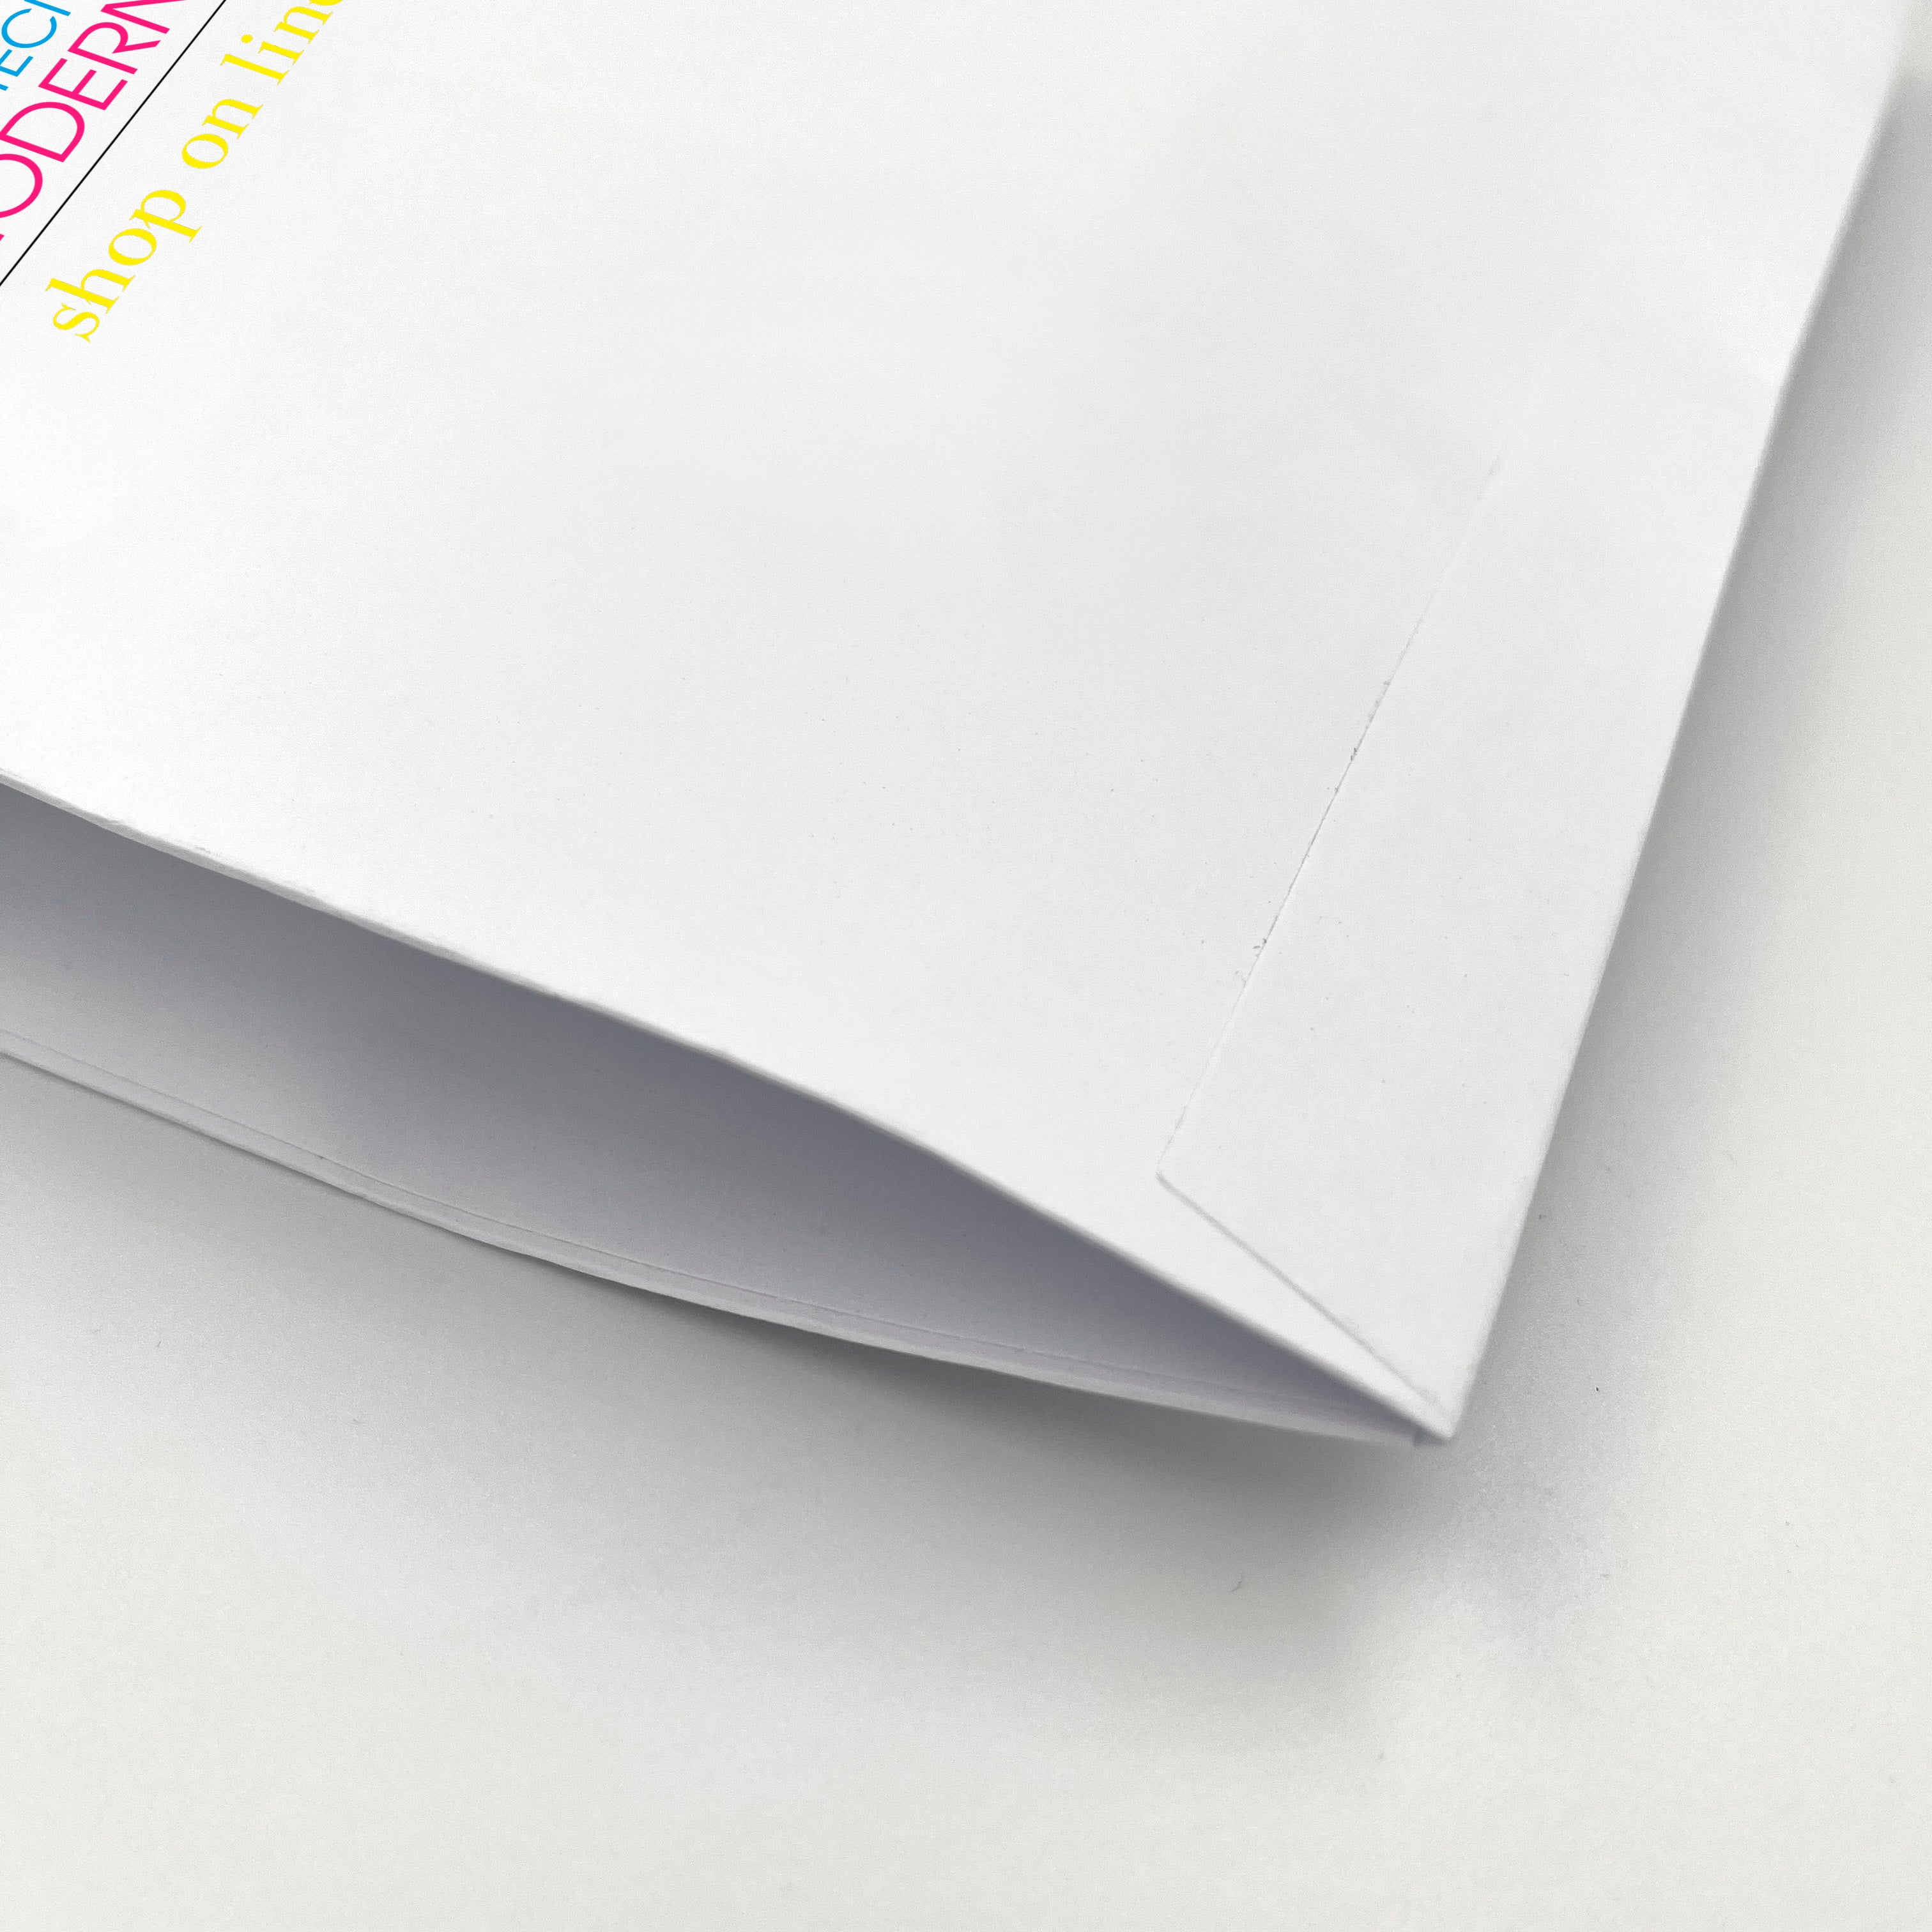 Pochette Mailer per spedizioni - stampa digitale all over sui due lati